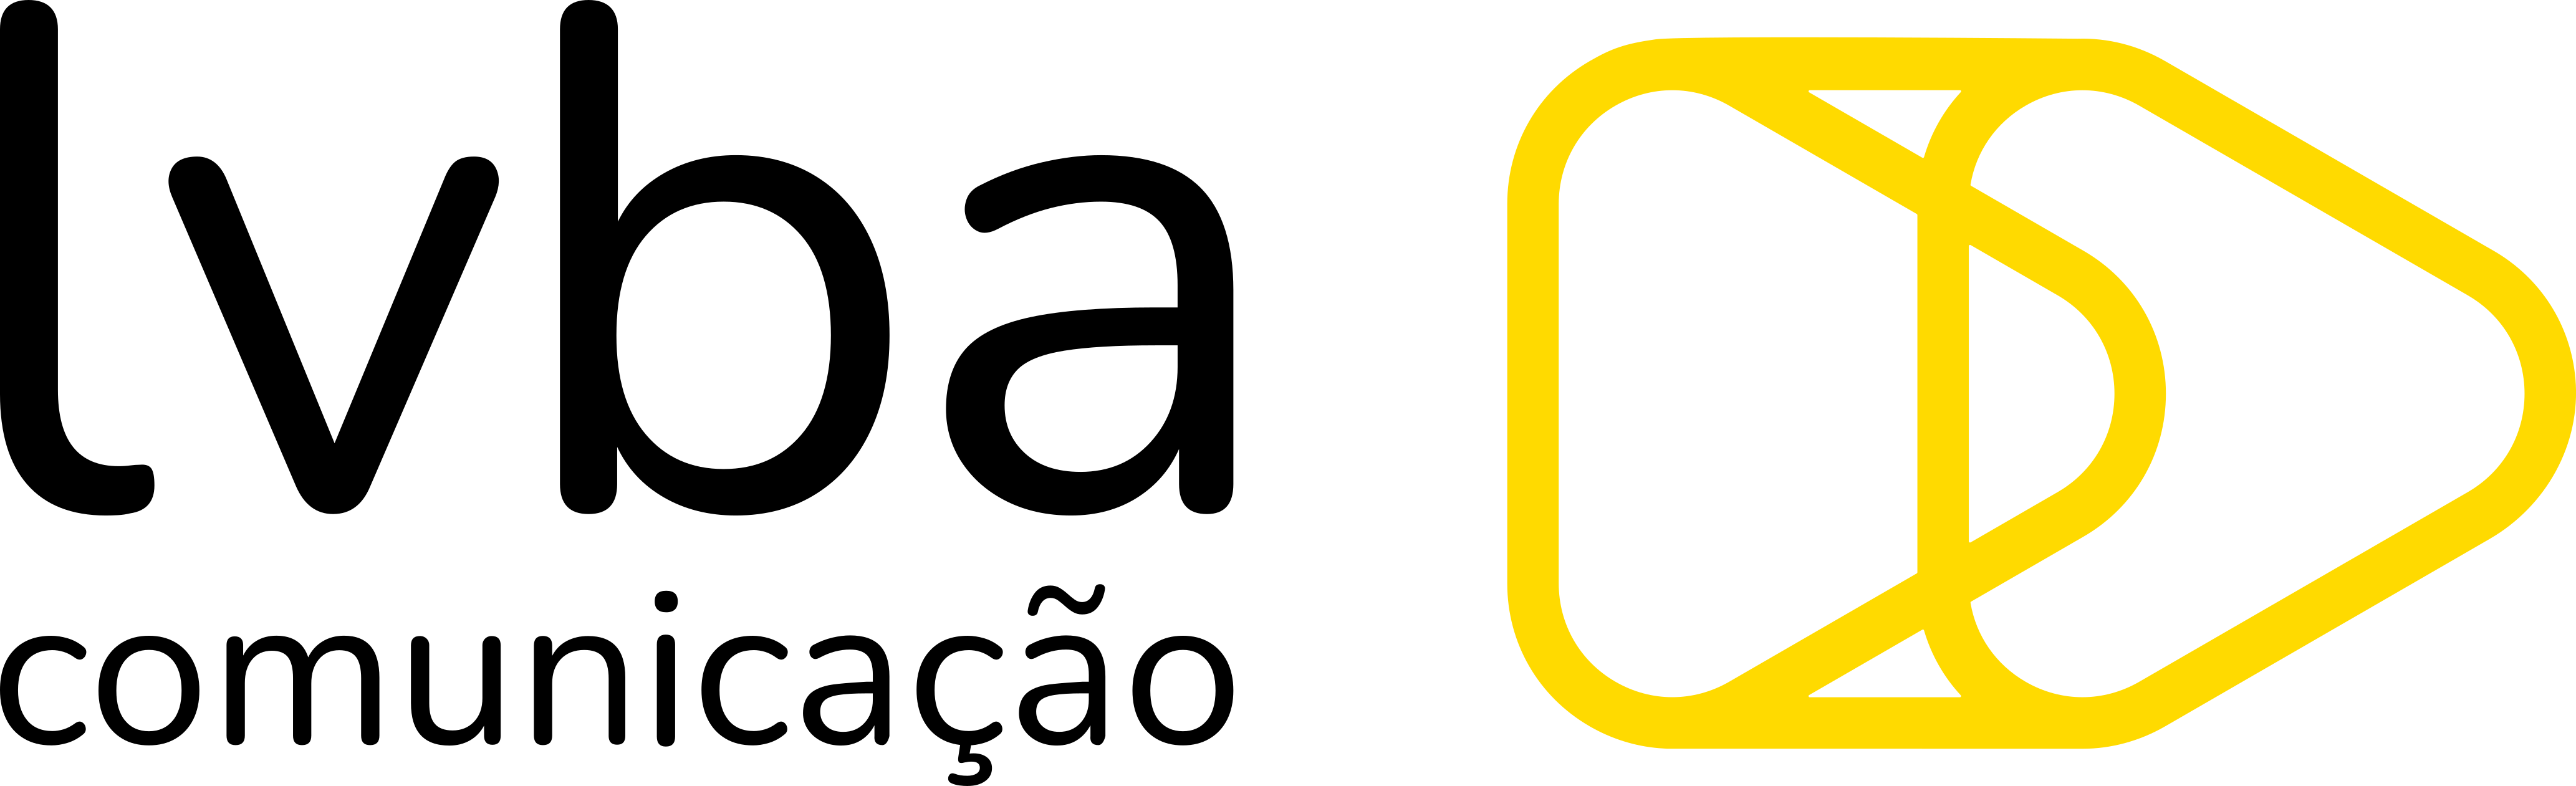 Logo-SVG-_1_.png